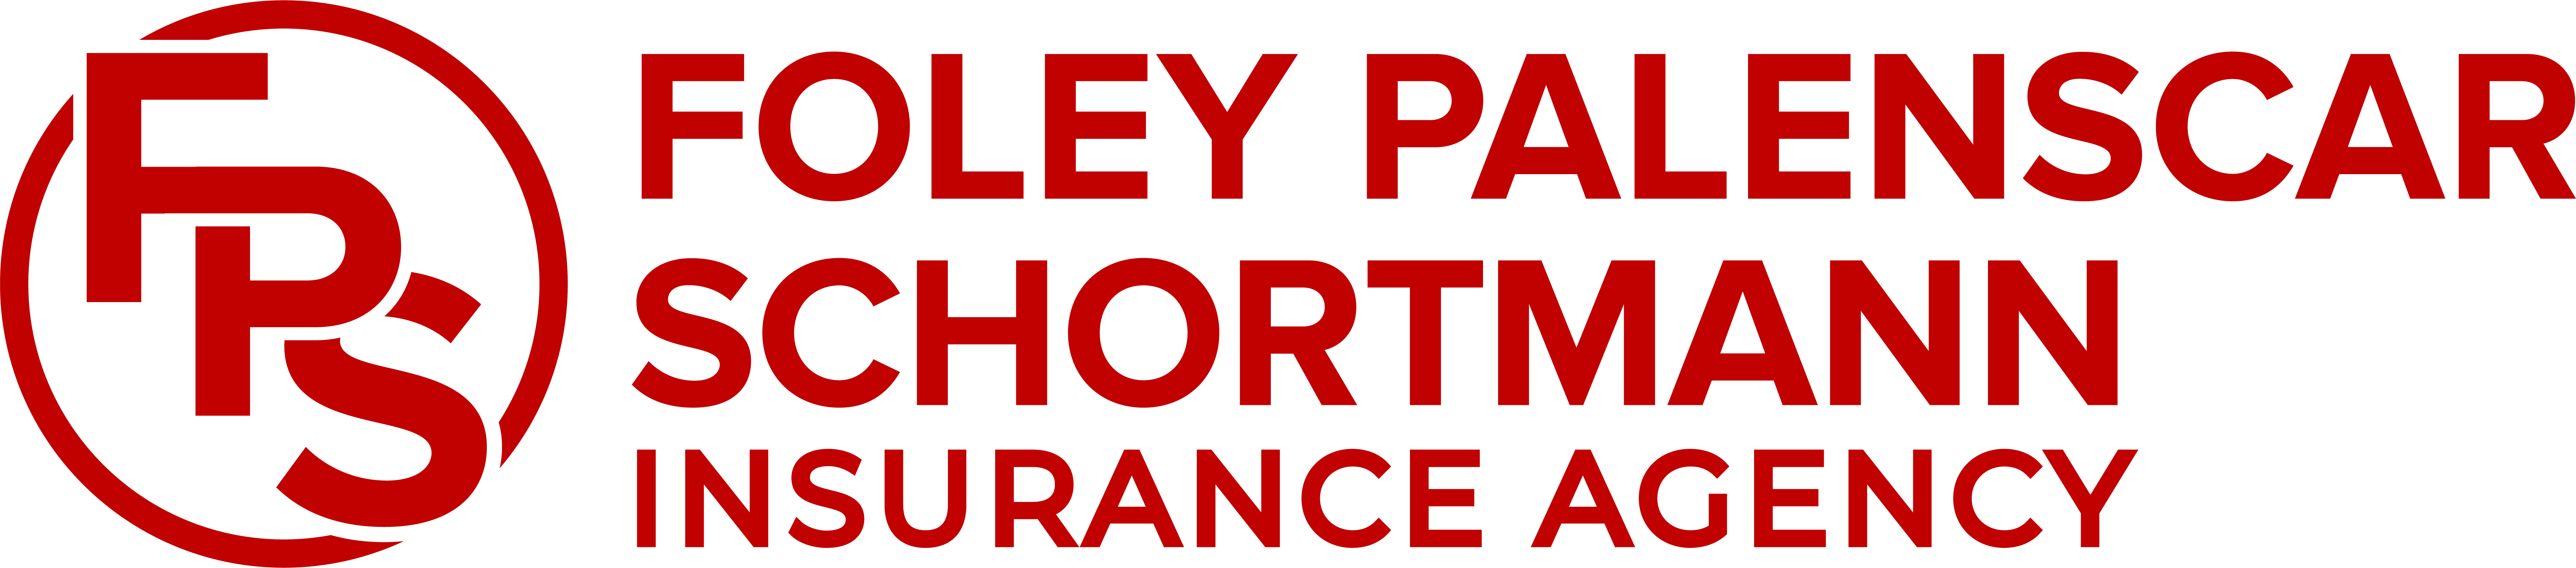 Foley Palenscar Schortmann Insurance Agency — Dedham Icon